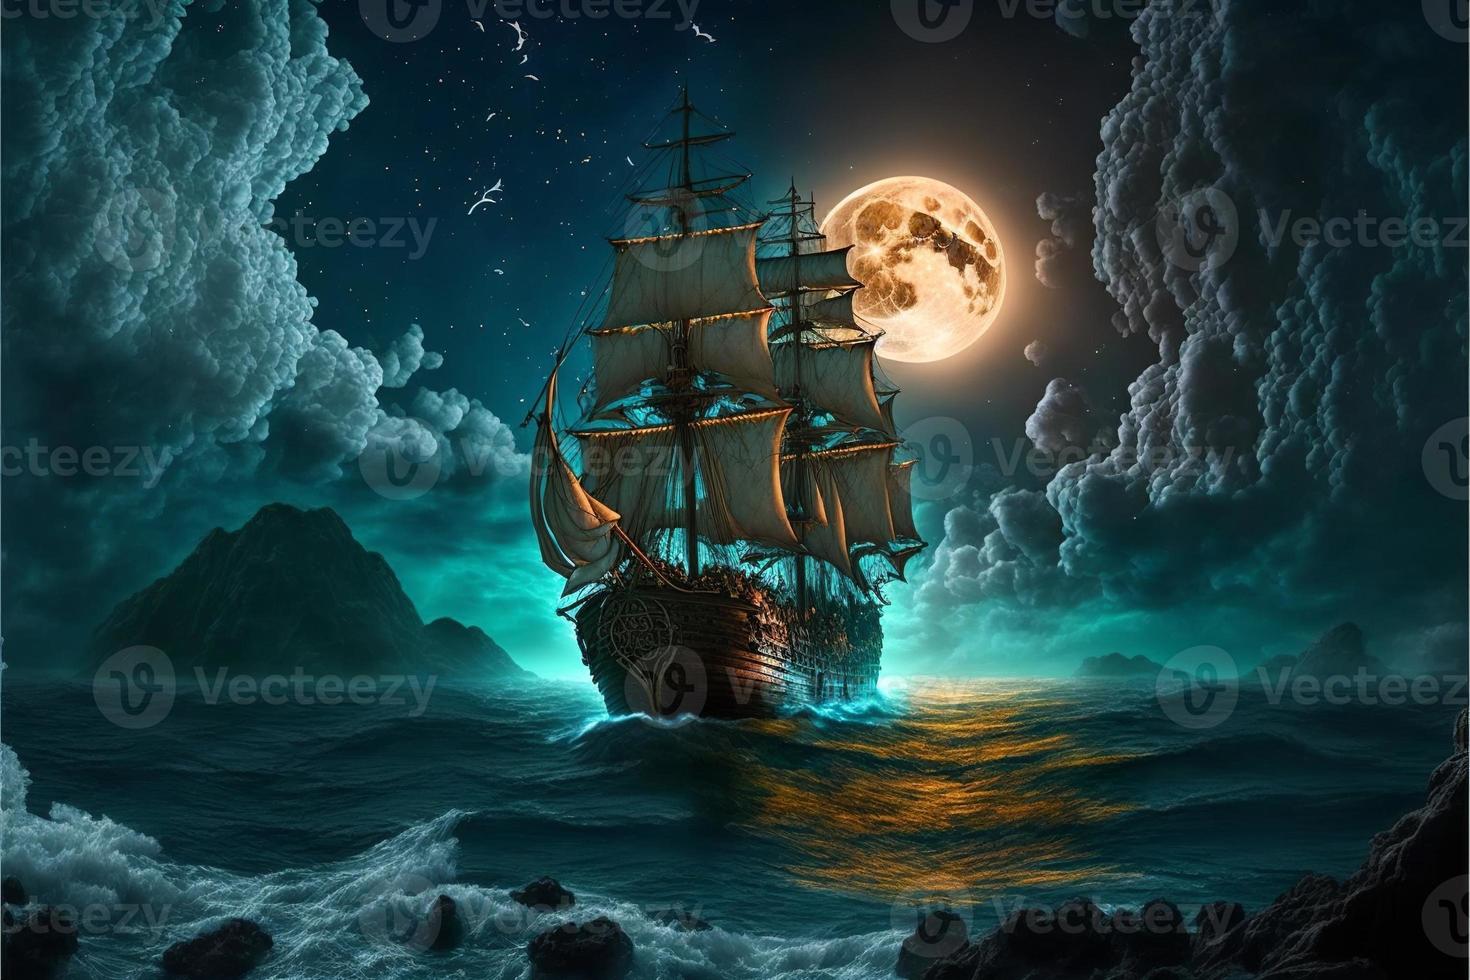 landschap met piraat schip in de zee, lucht vol van wolken en vol maan, horizon in de achtergrond. ai digitaal illustratie foto